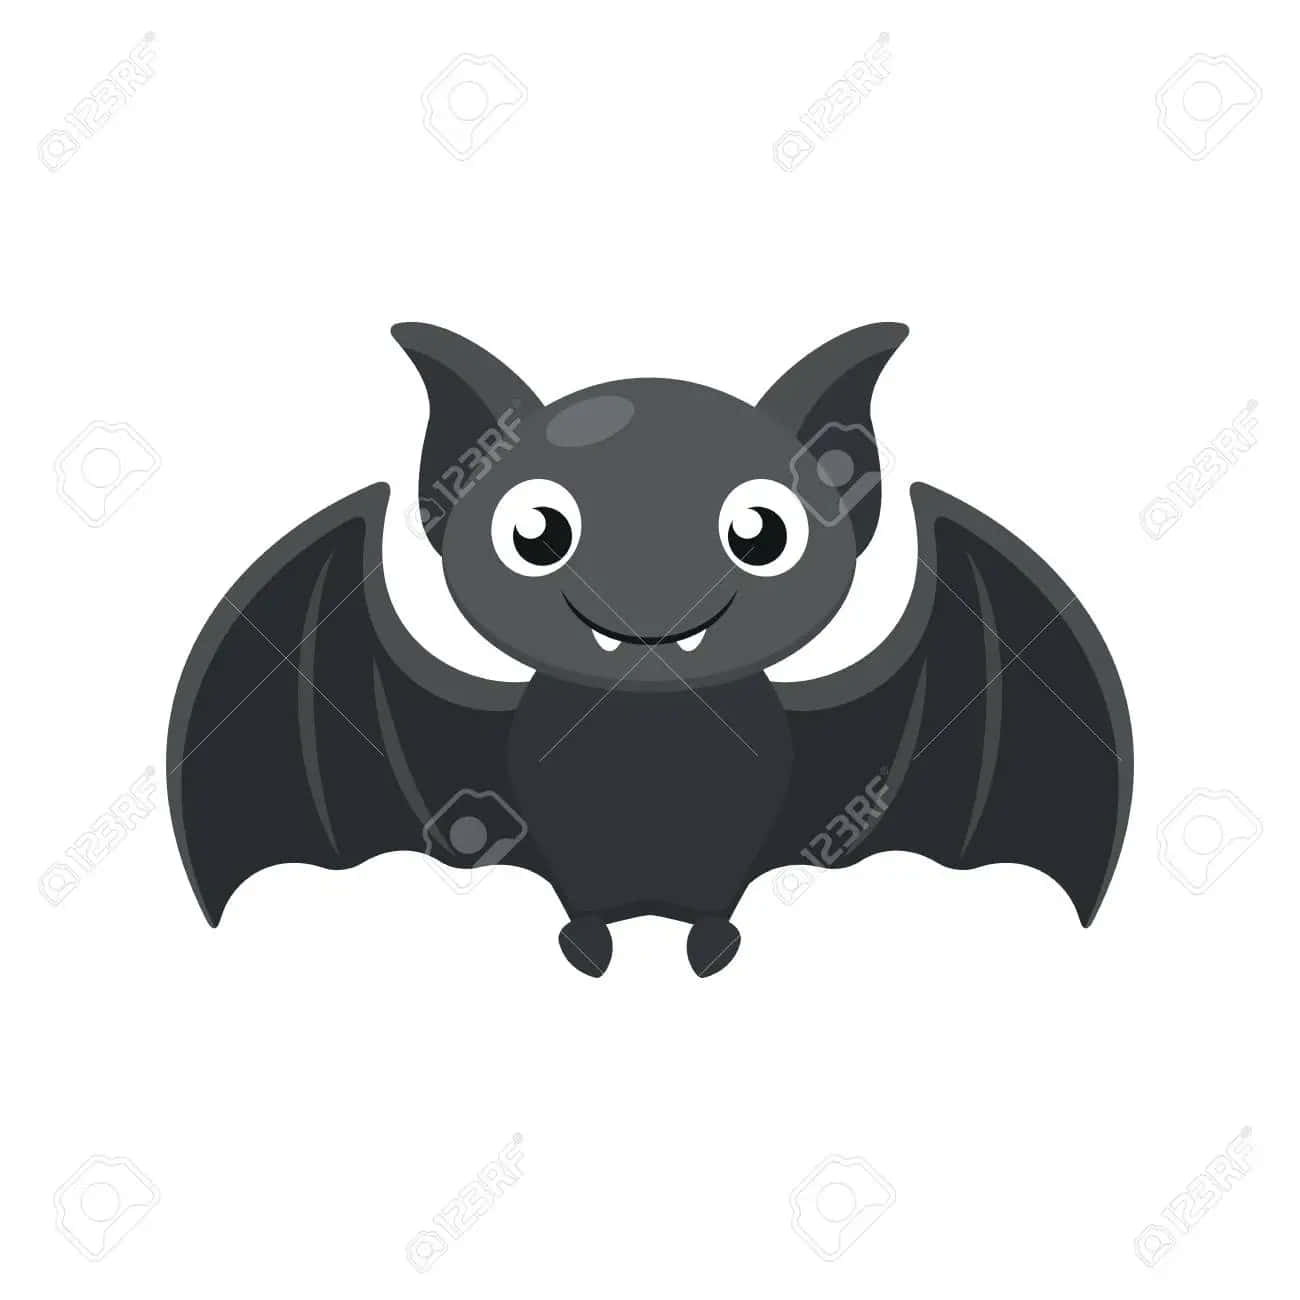 cute hanging bat cartoon